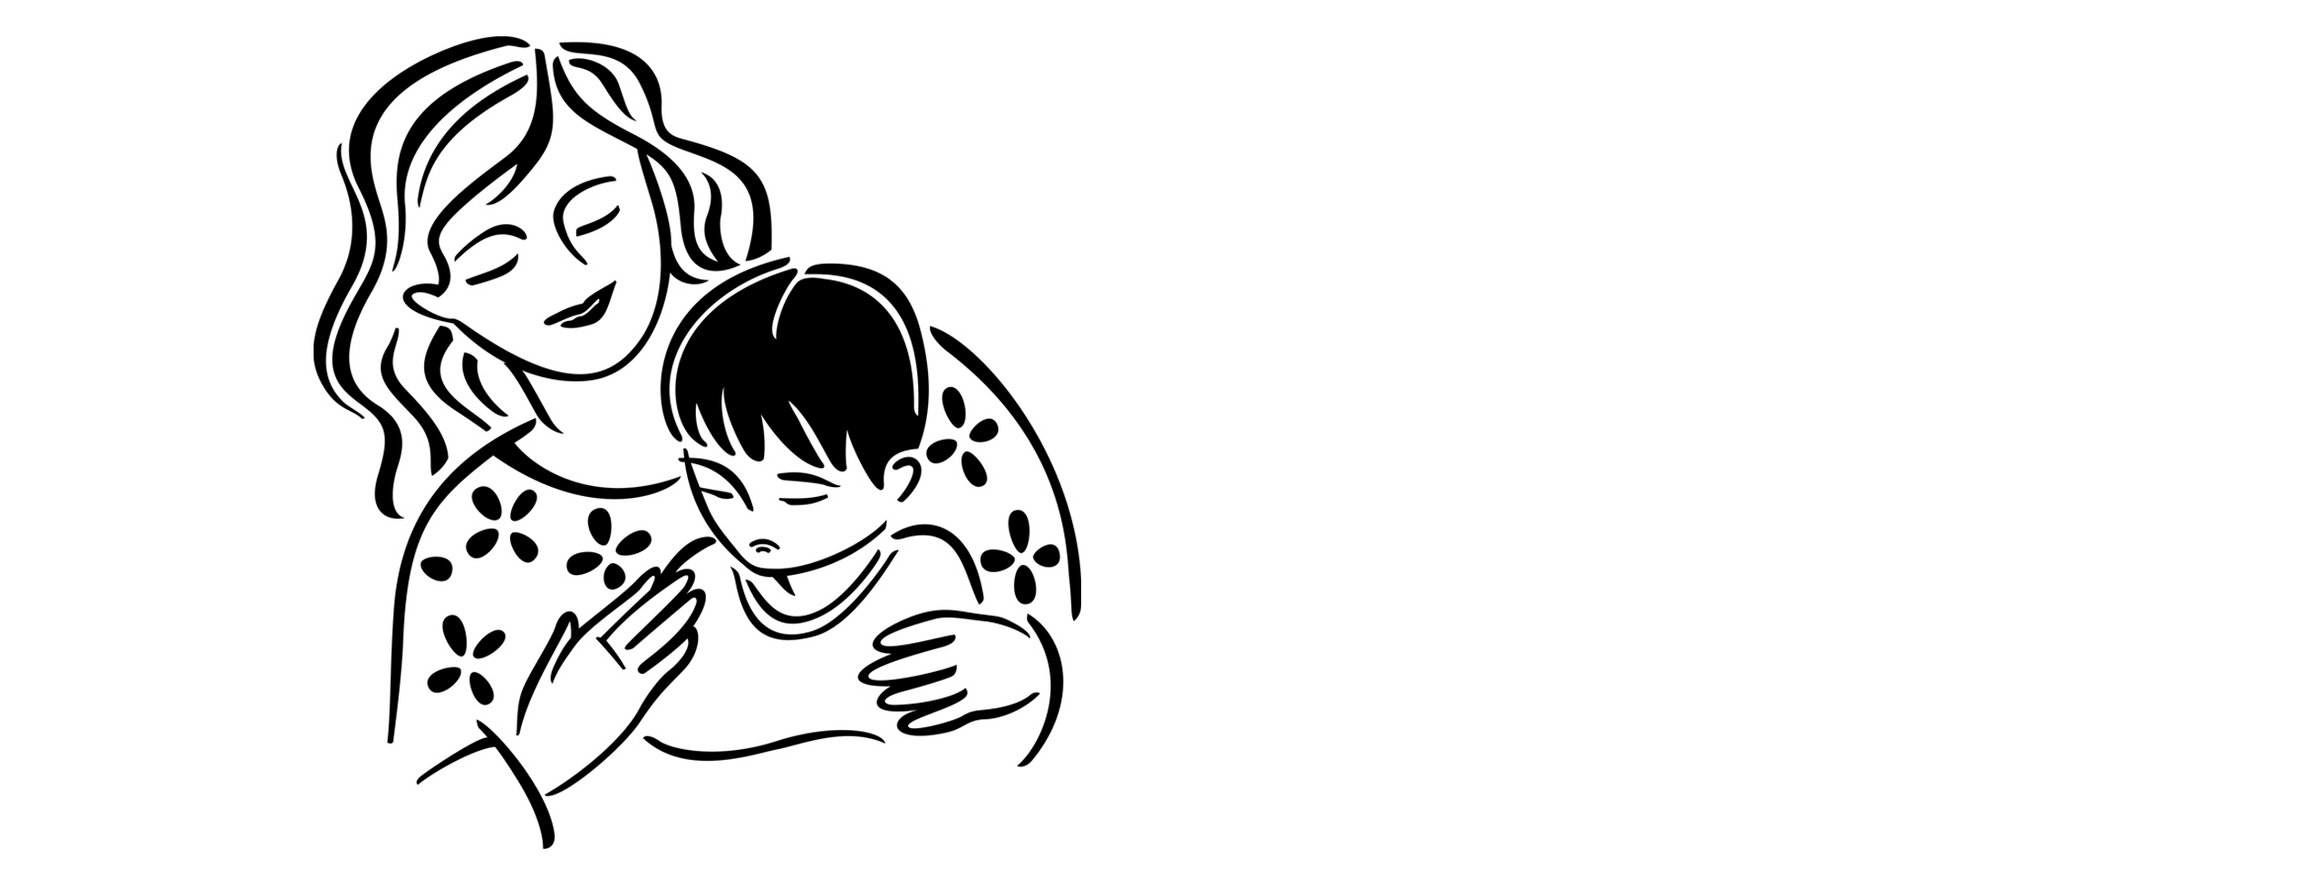 Die Illustration zeigt eine Mutter, die lächelt und ihre Hände um ein trauriges Kind legt